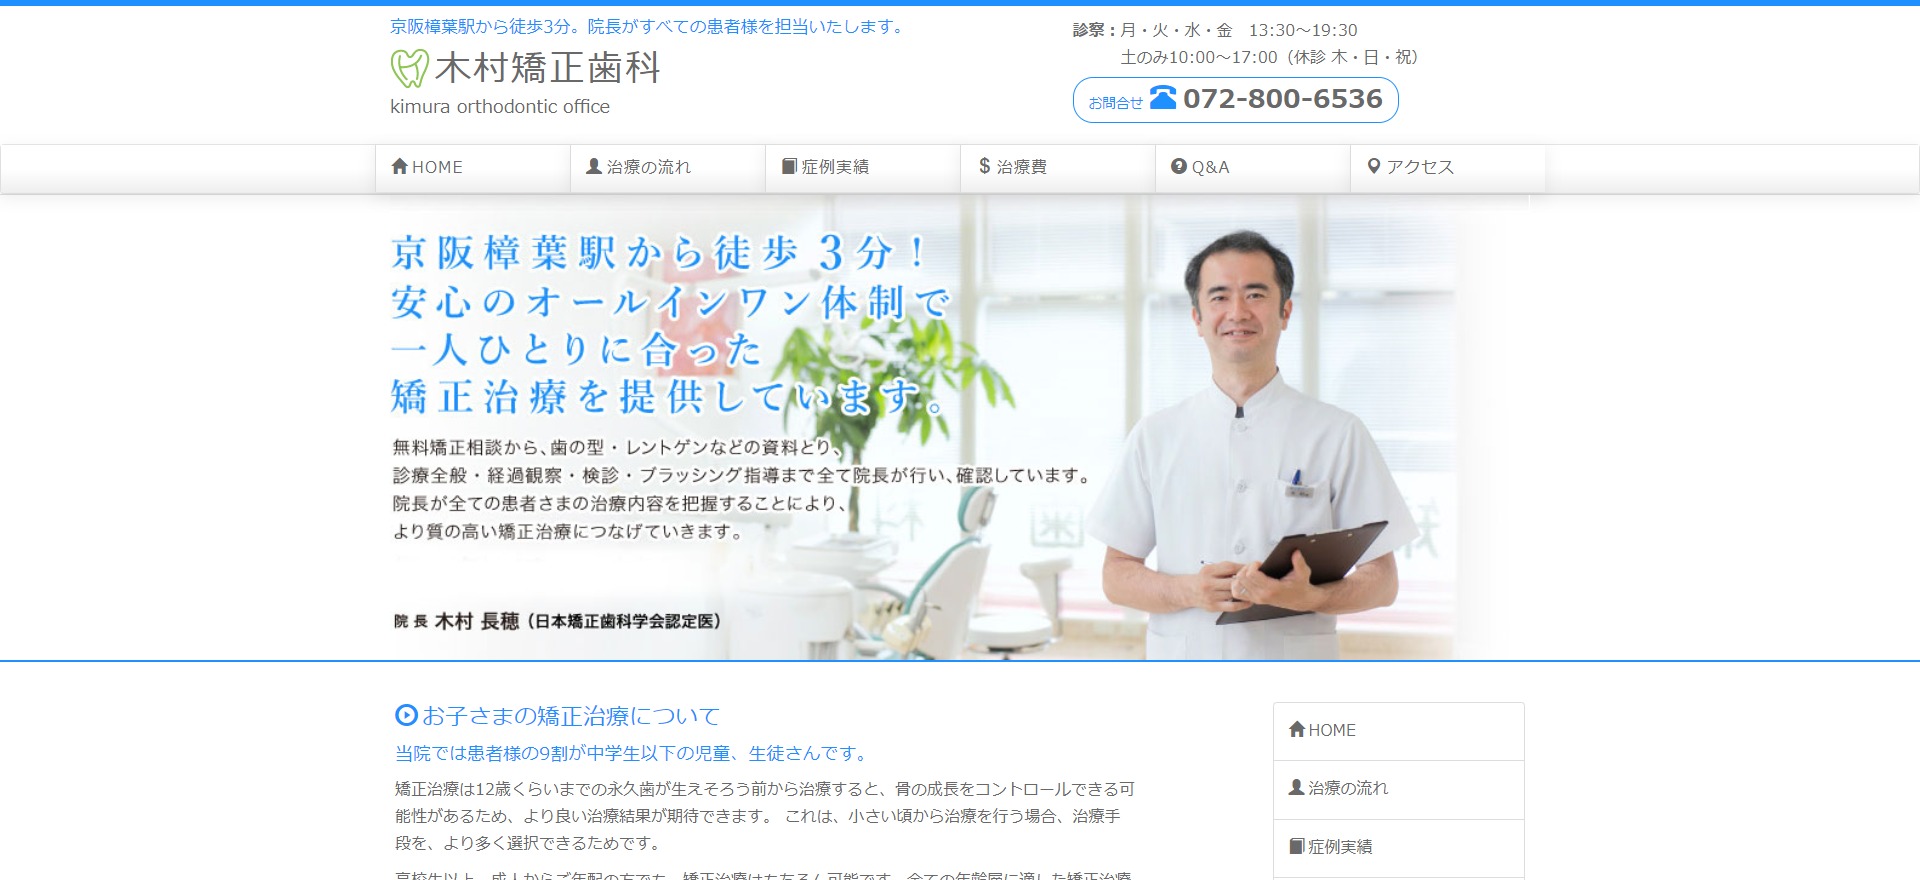 木村矯正歯科の公式サイト